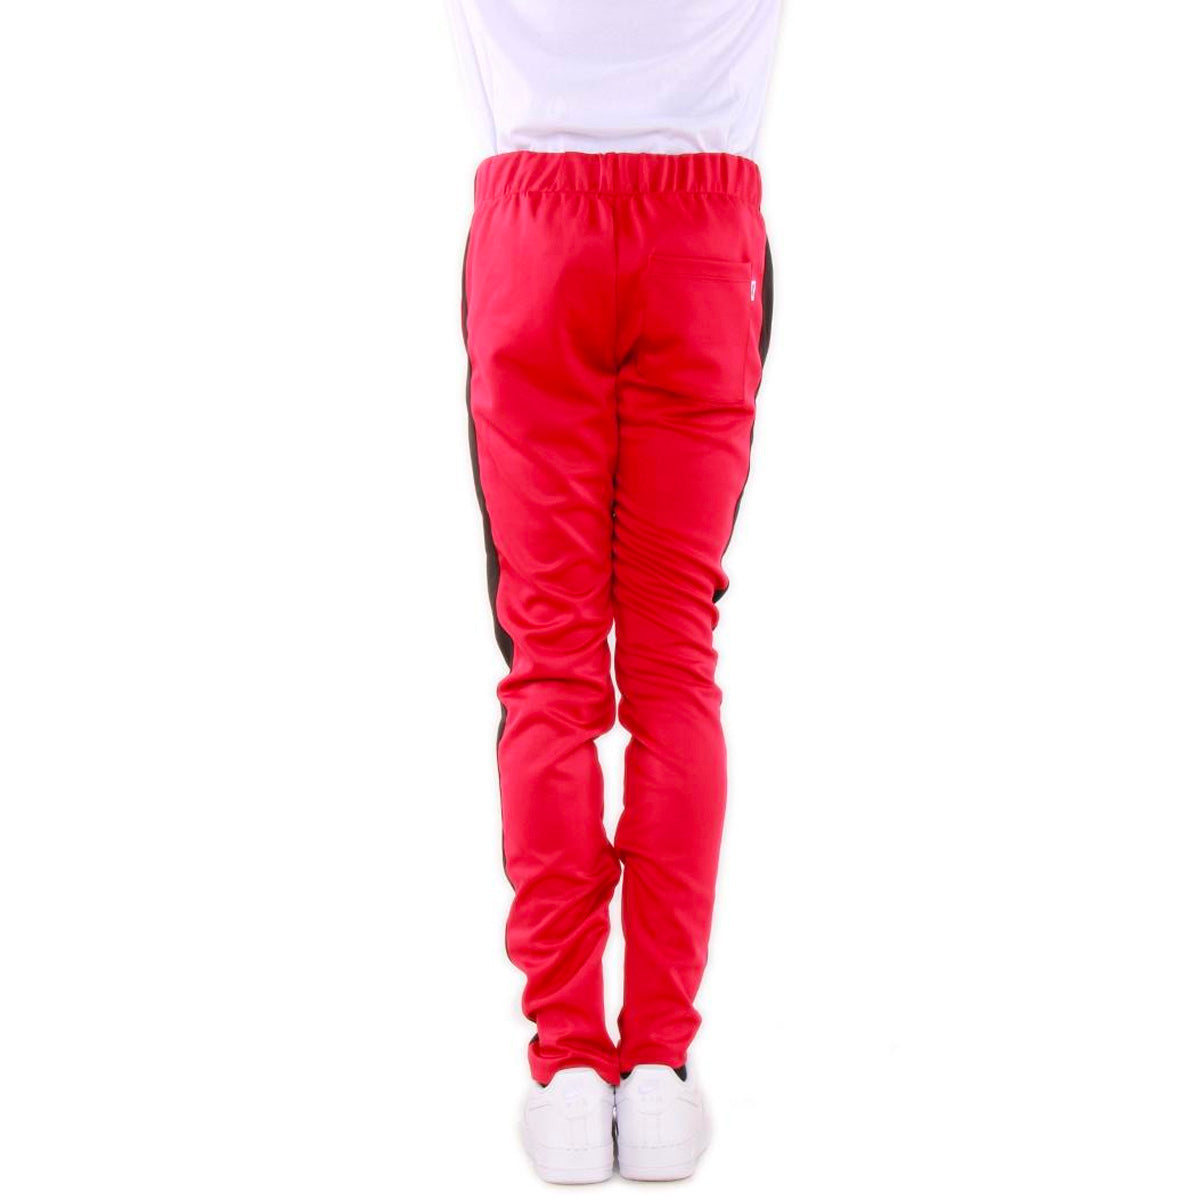 Slim Track Pants - Red / Black